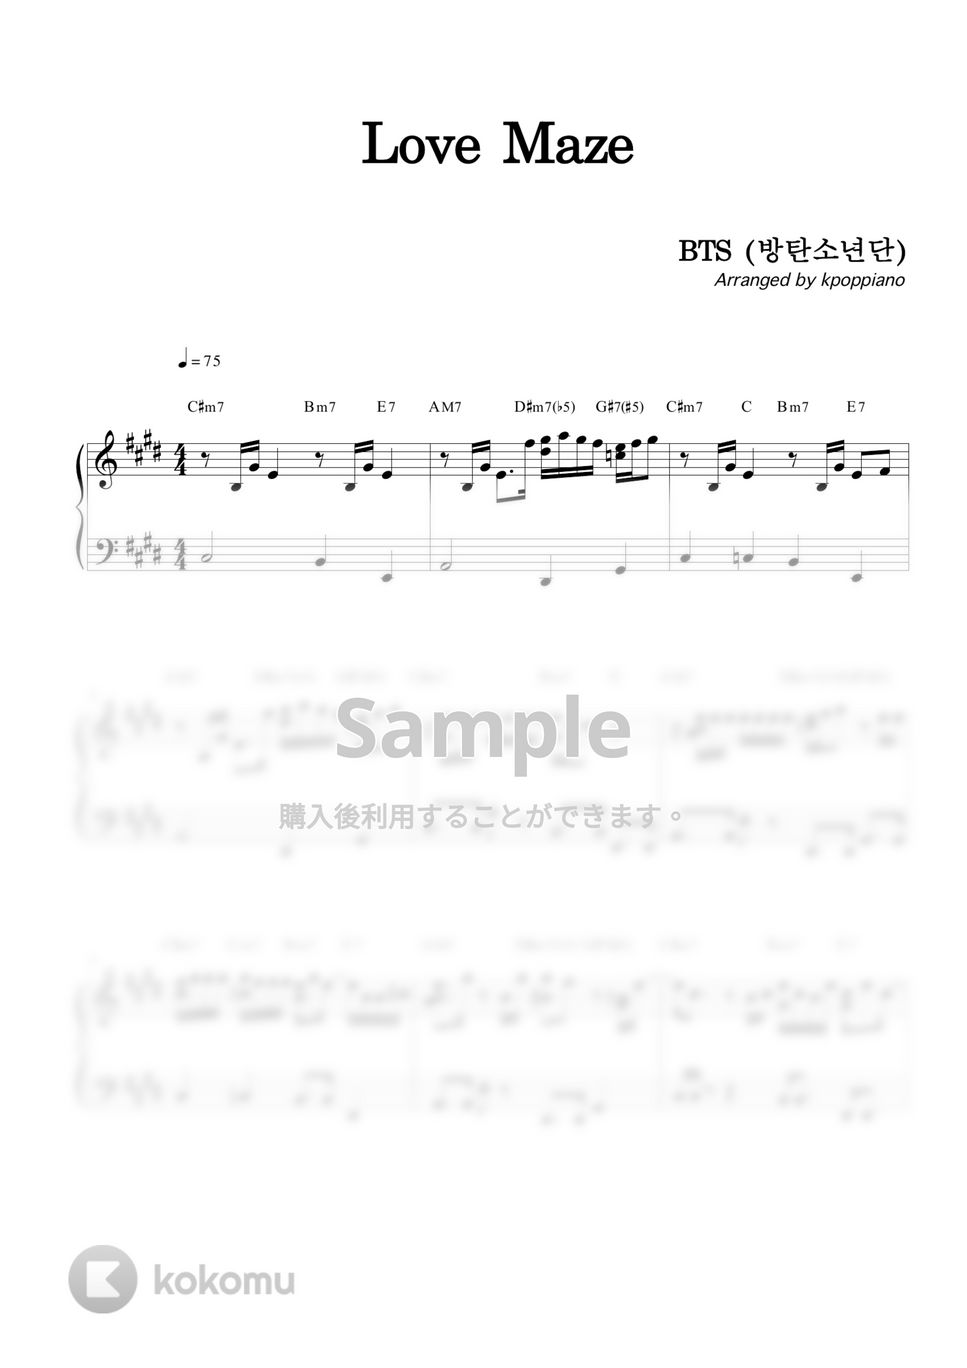 防弾少年団 (BTS) - Love Maze by KPOP PIANO